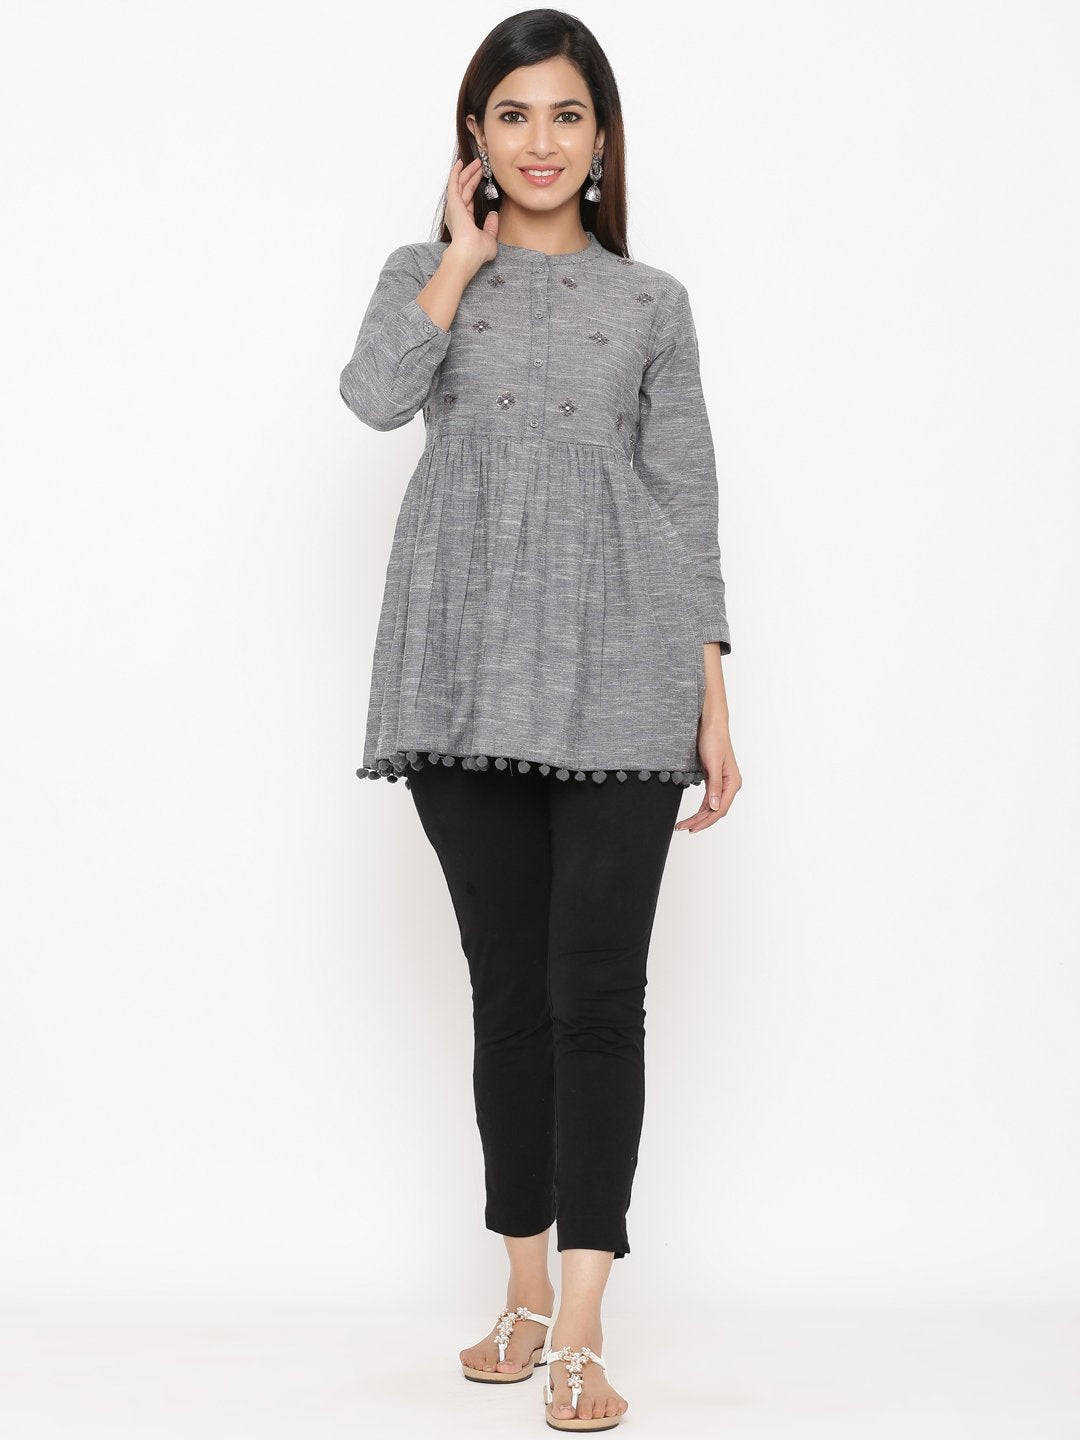 Women's Grey Cotton Tunic by Kipek (1pc)